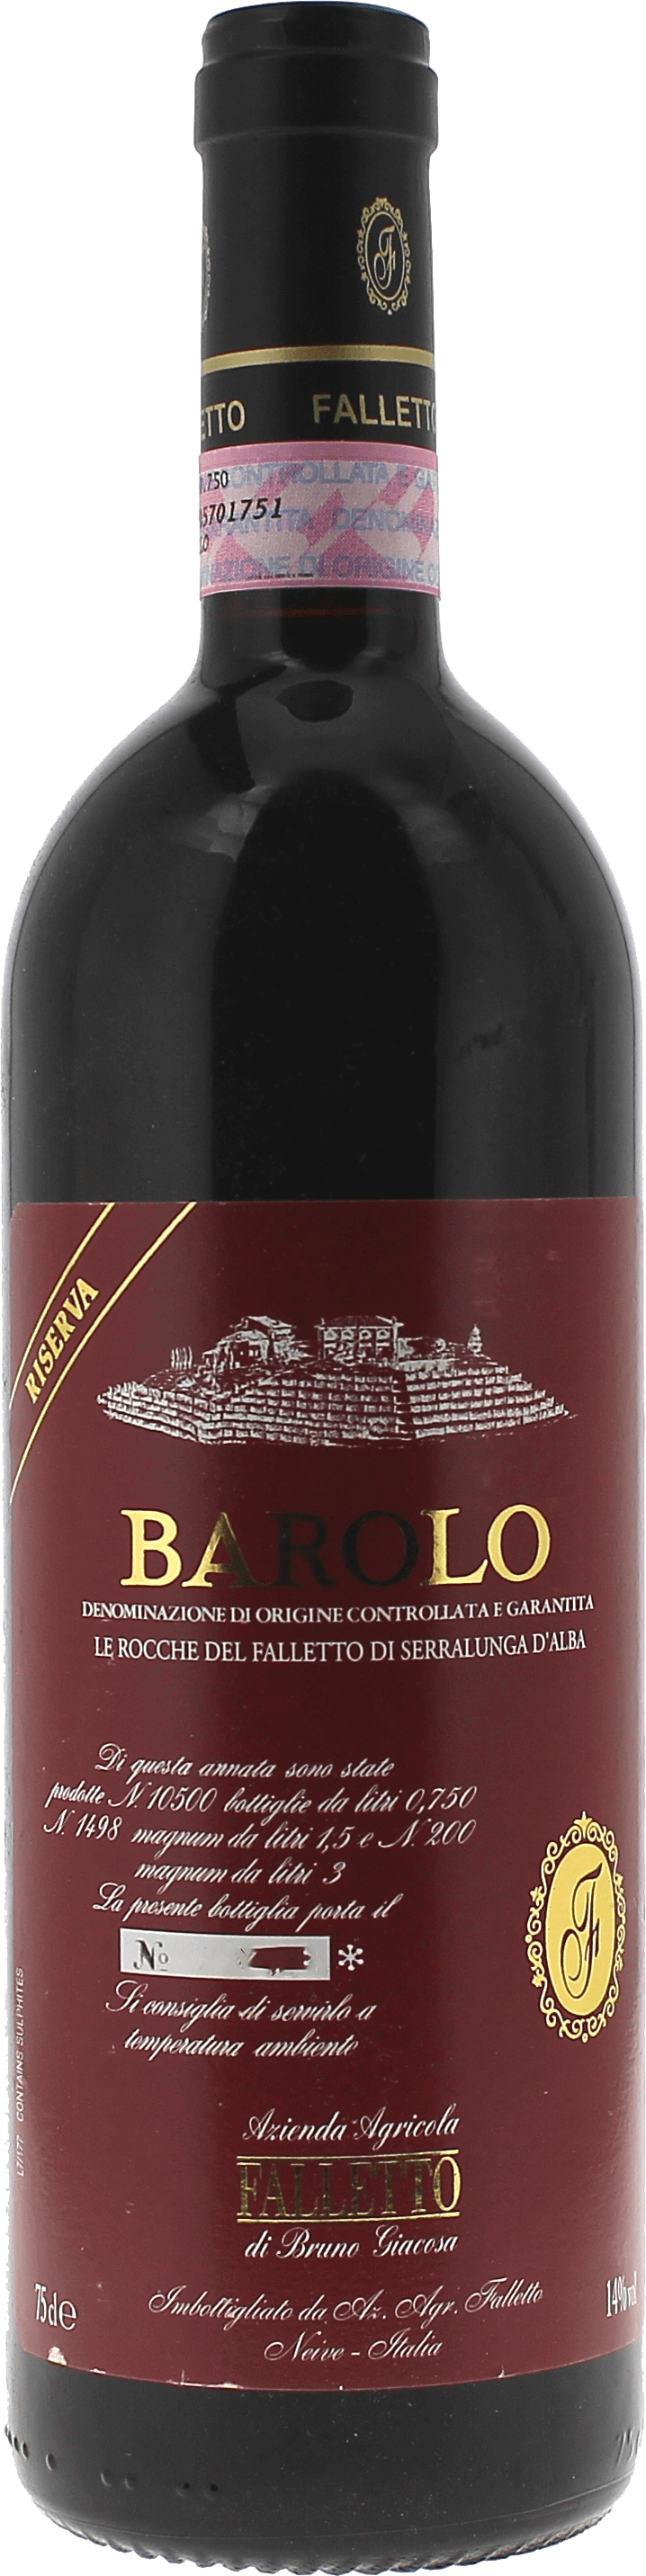 Barolo le rocche del falletto riserva 2008  Italie, Vin italien